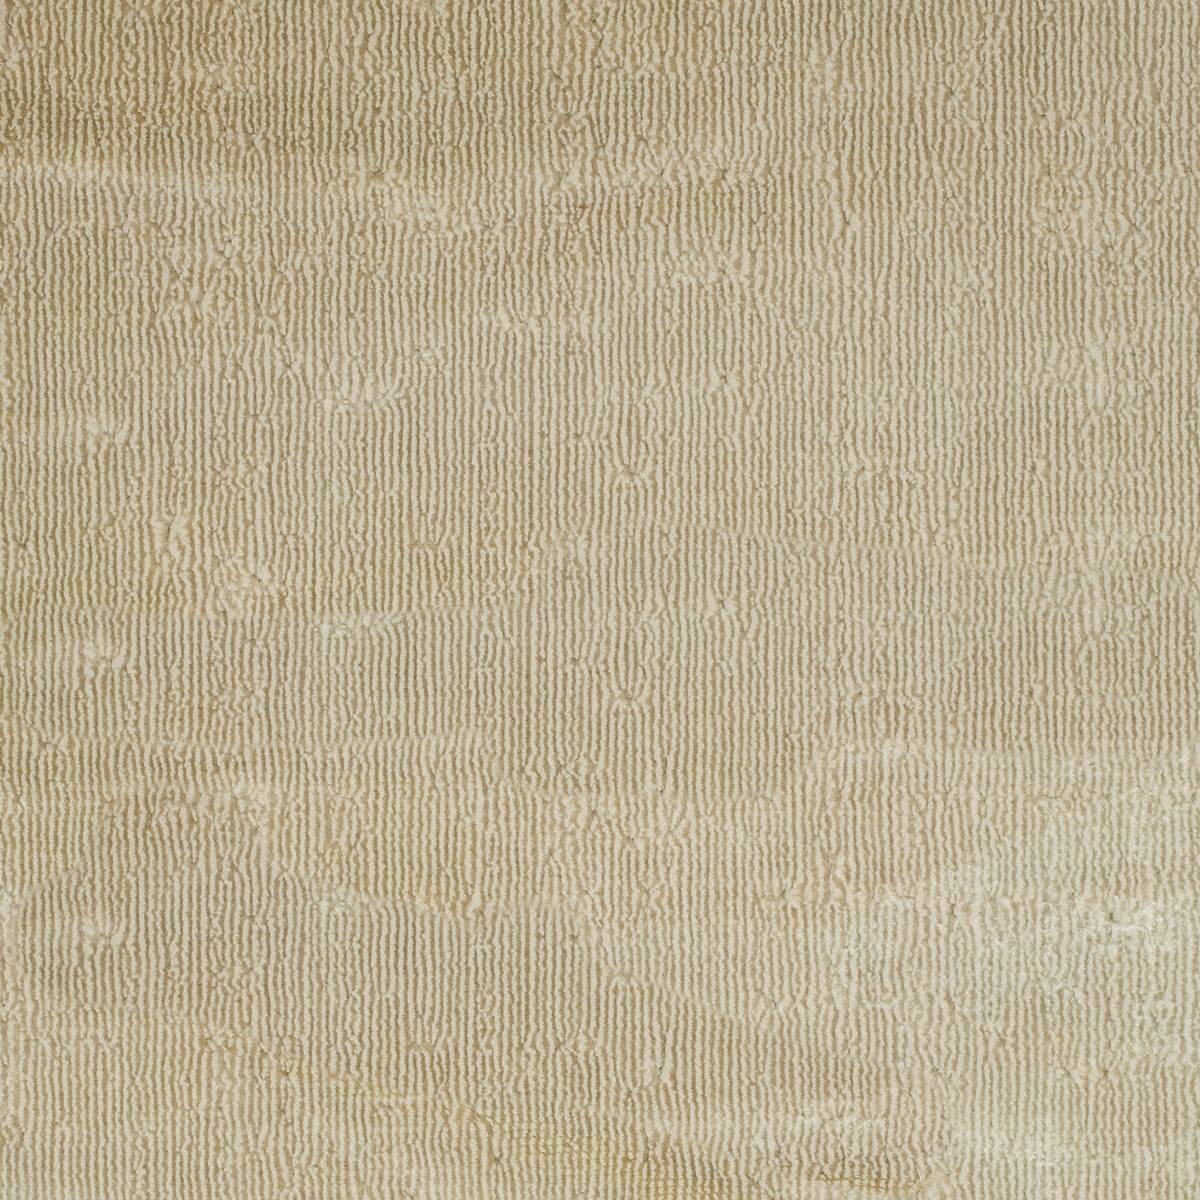 Curzon Pale Linen by Zoffany - Fabric - ZMAZ333066 - Britannia Rose